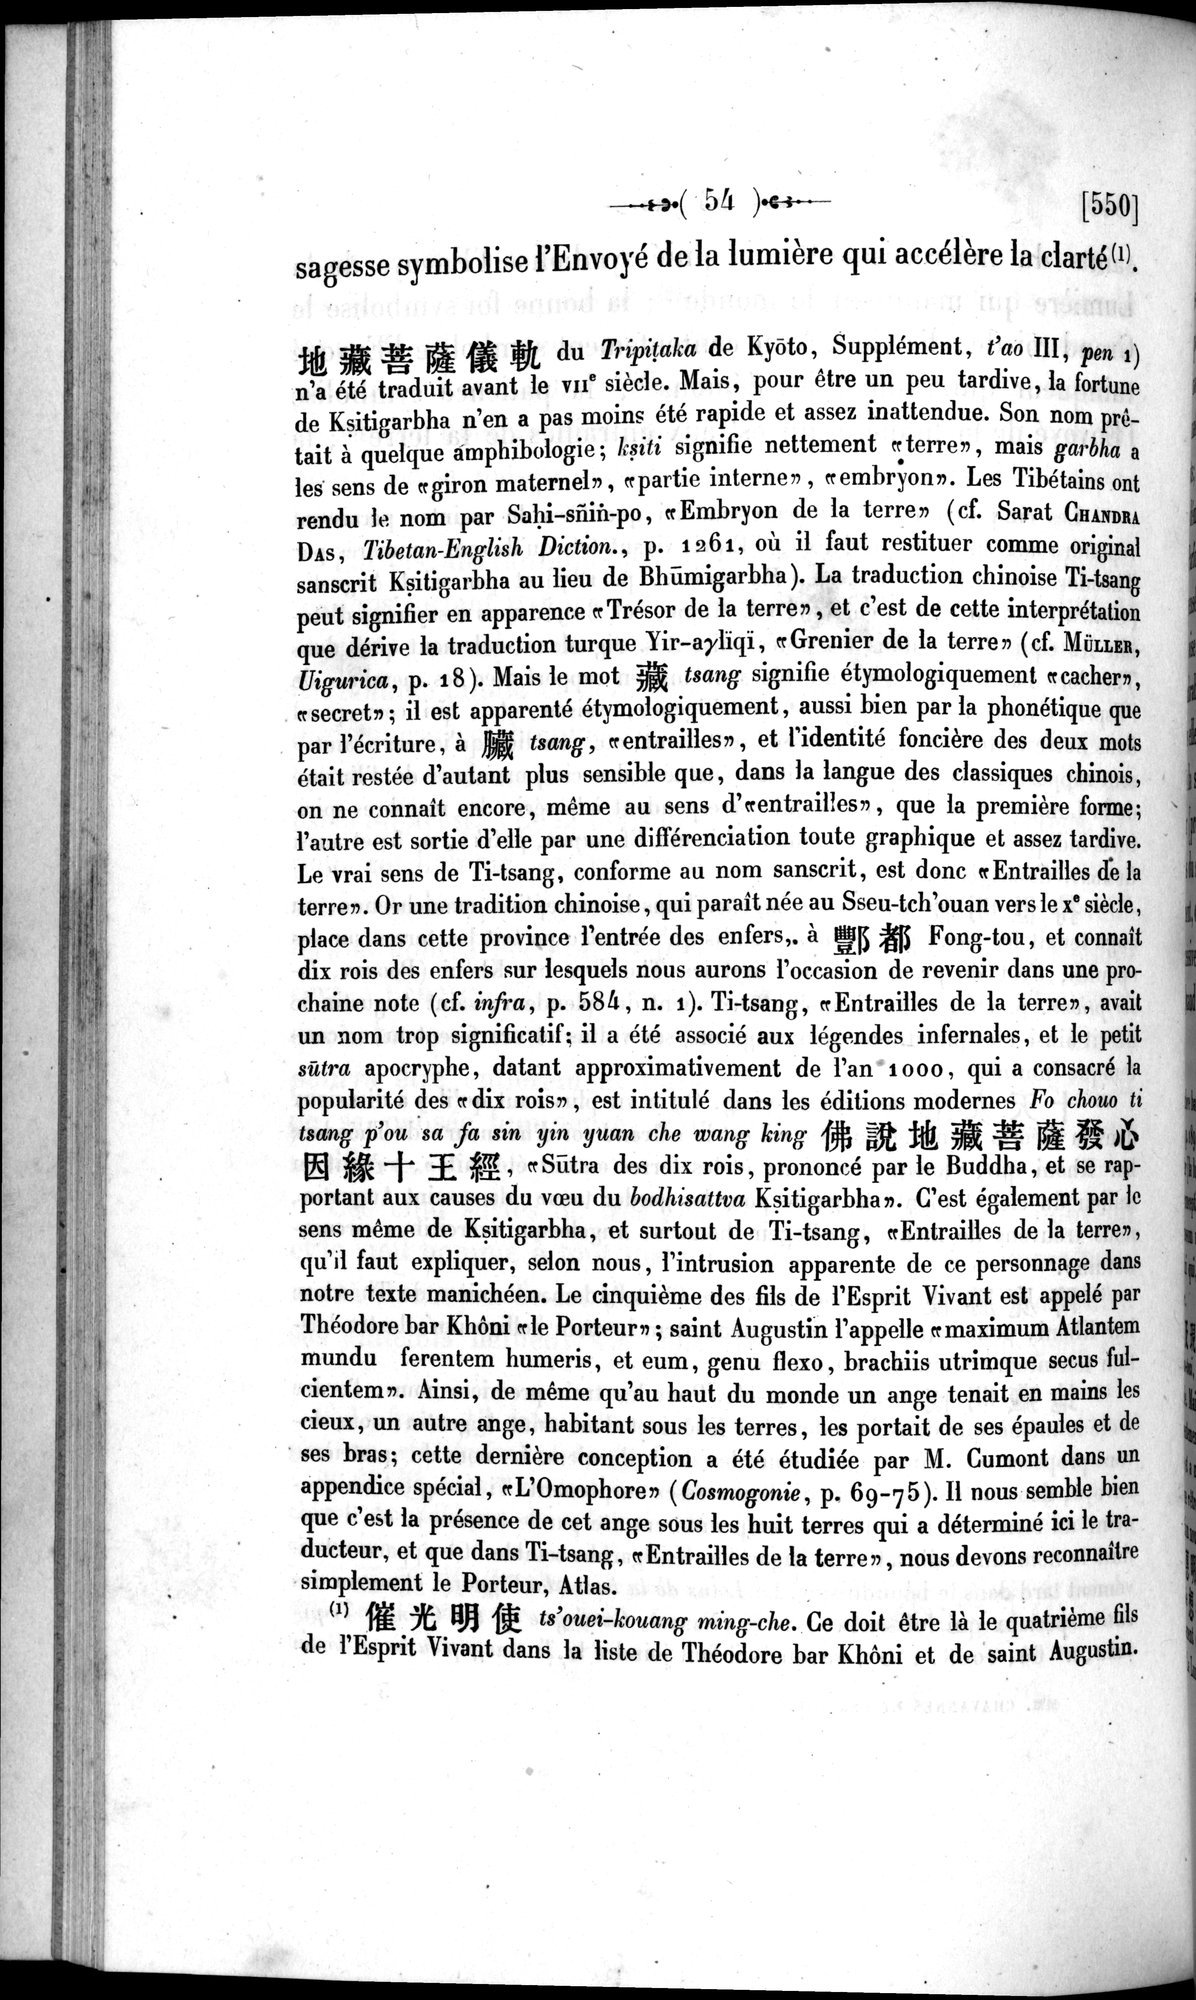 Un traité manichéen retrouvé en Chine : vol.1 / Page 64 (Grayscale High Resolution Image)